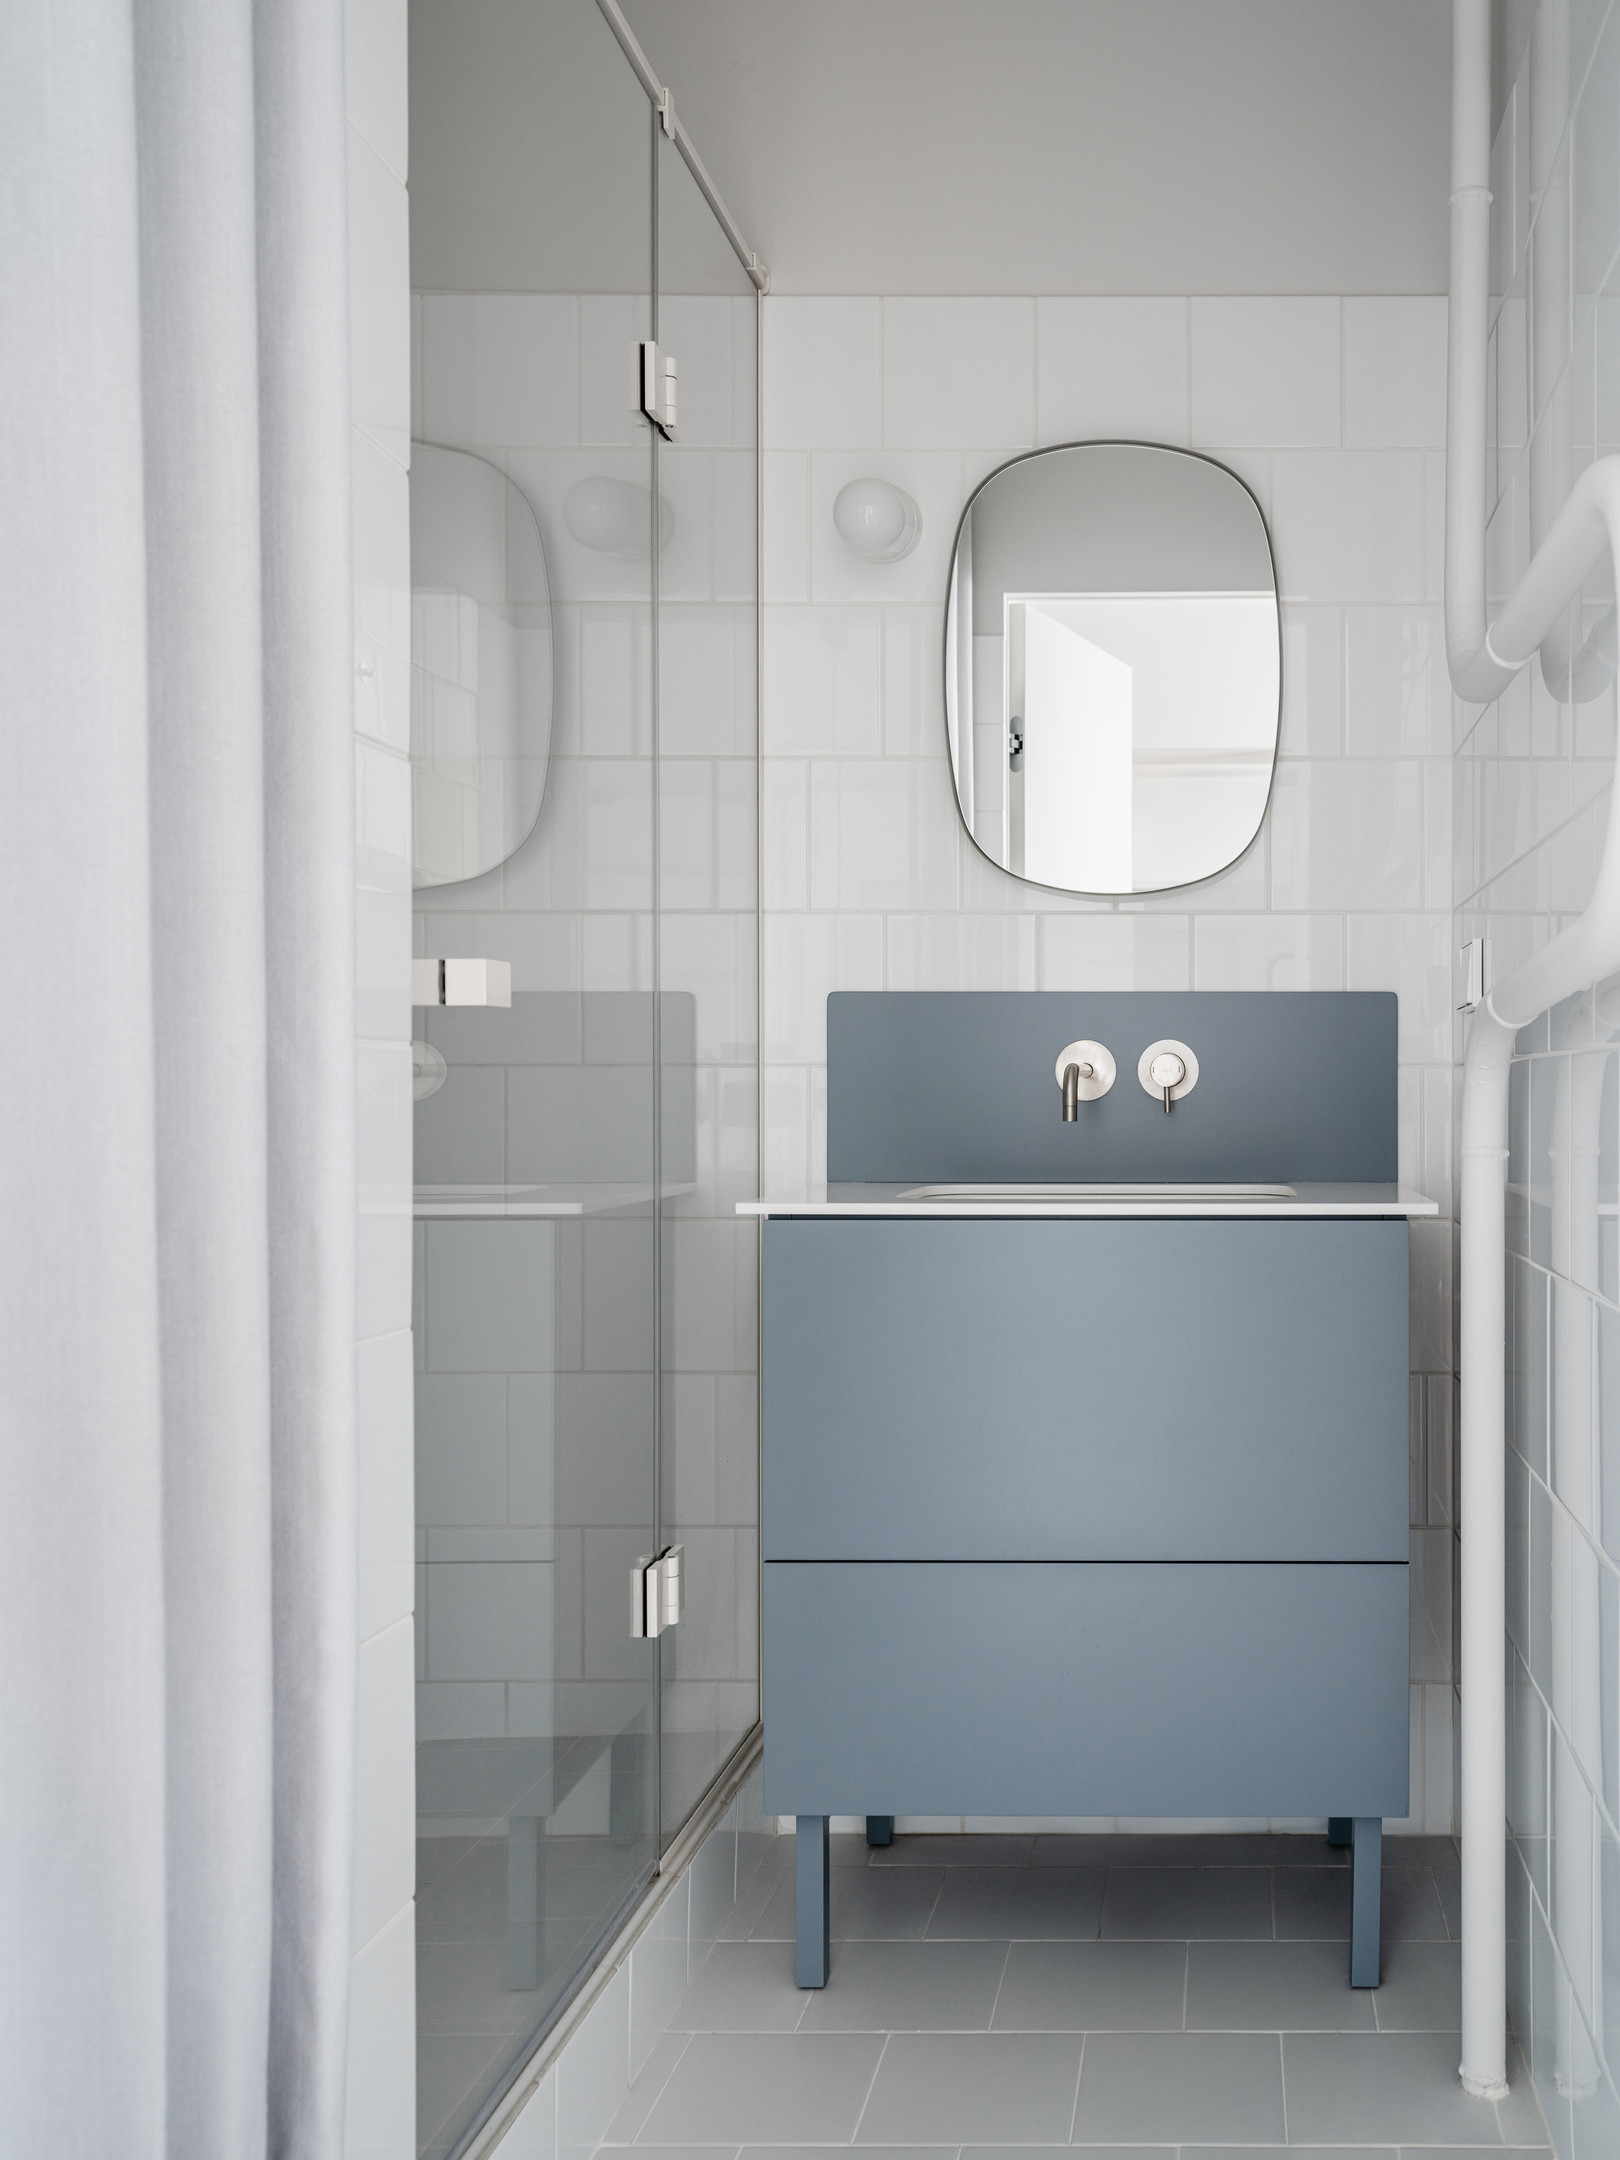 Phòng tắm nhẹ nhàng với chiếc tủ vanity màu xanh lam nhạt nổi bật trên nền tường ốp gạch trắng. Cửa kính trong suốt kết hợp rèm vải giúp phân vùng buồng tắm và nhà vệ sinh đẹp mắt.